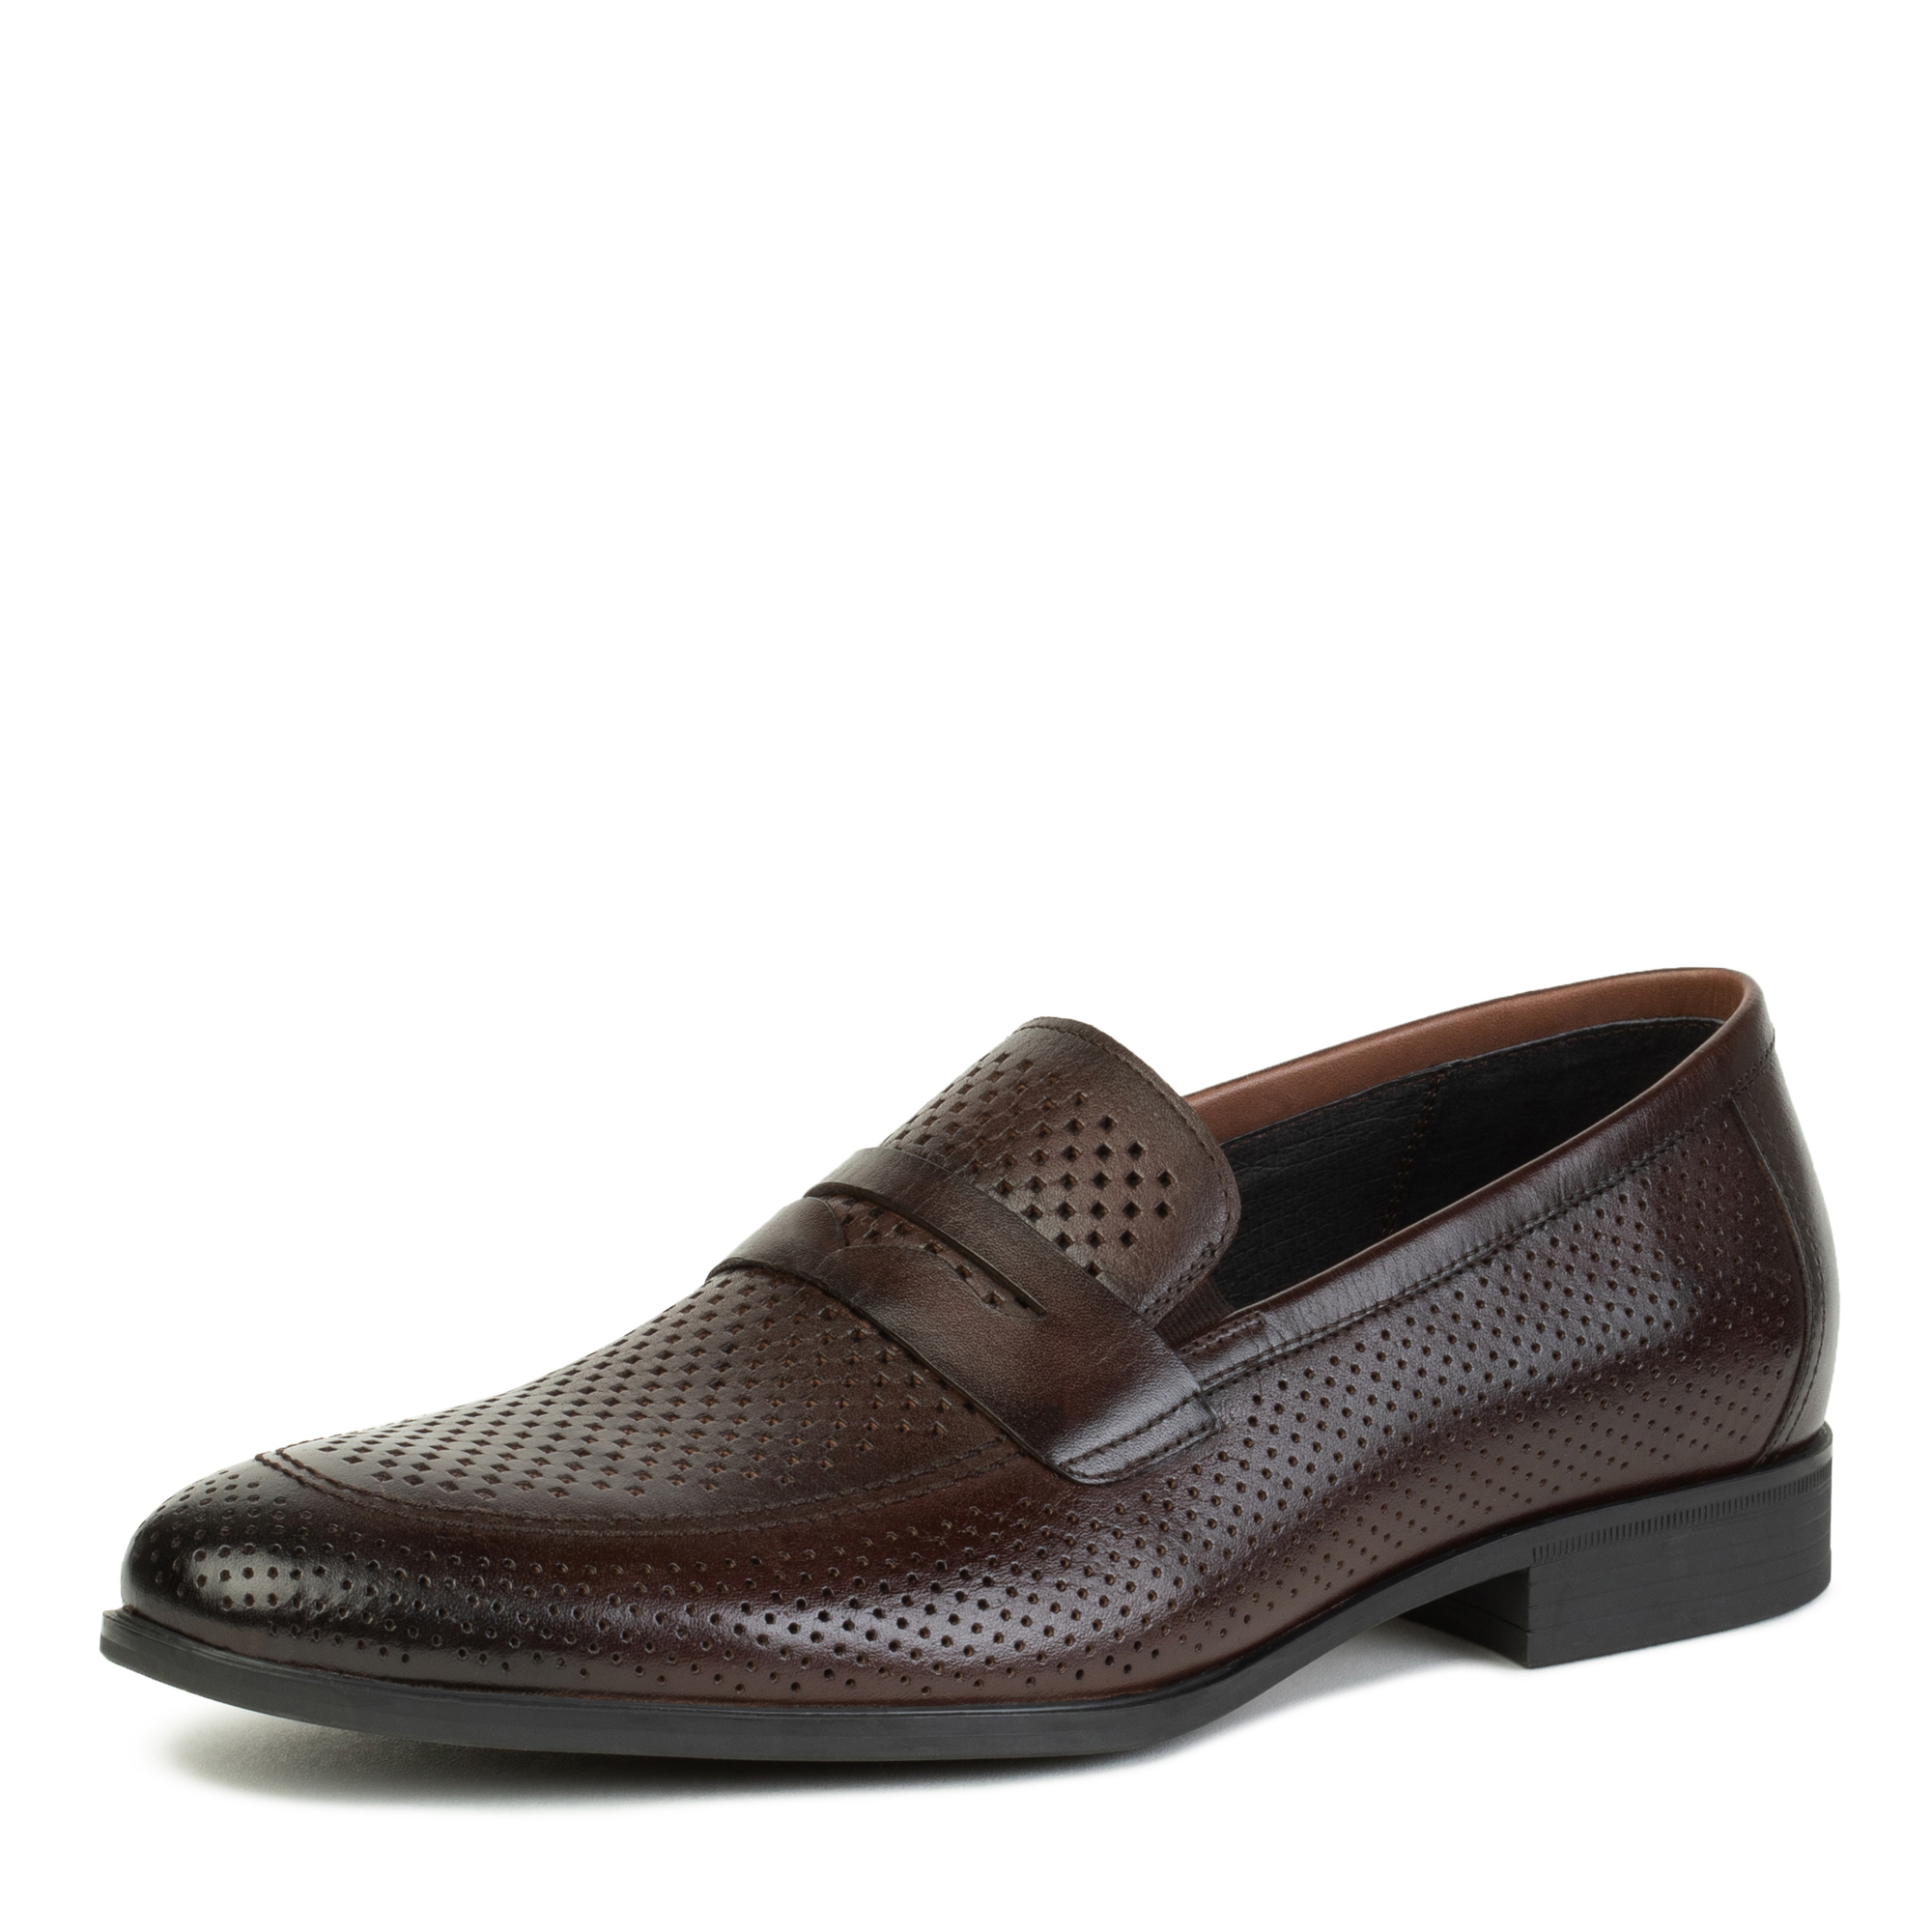 Туфли/полуботинки Thomas Munz 058-389A-1609, цвет темно-коричневый, размер 44 - фото 2